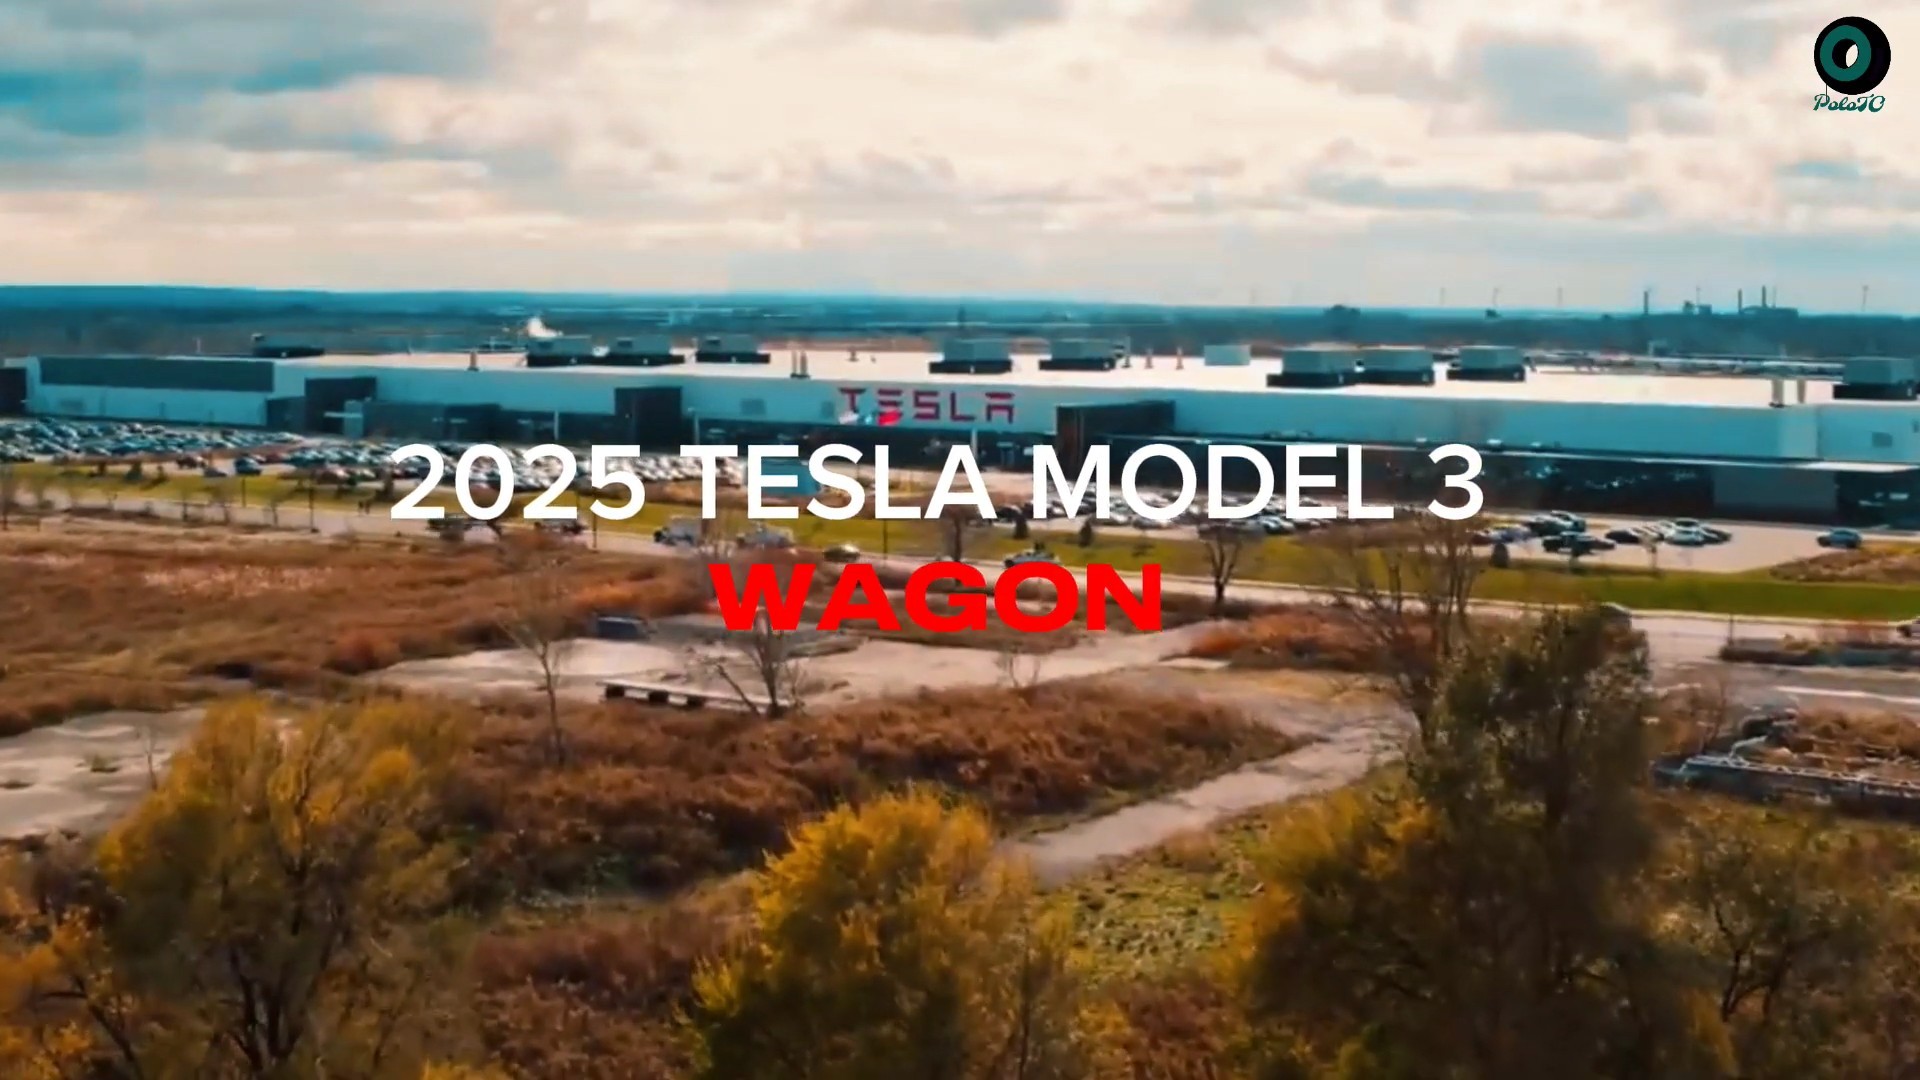 2025 Tesla Model 3 Highland Wagon Gets Revealed in Fantasy Land